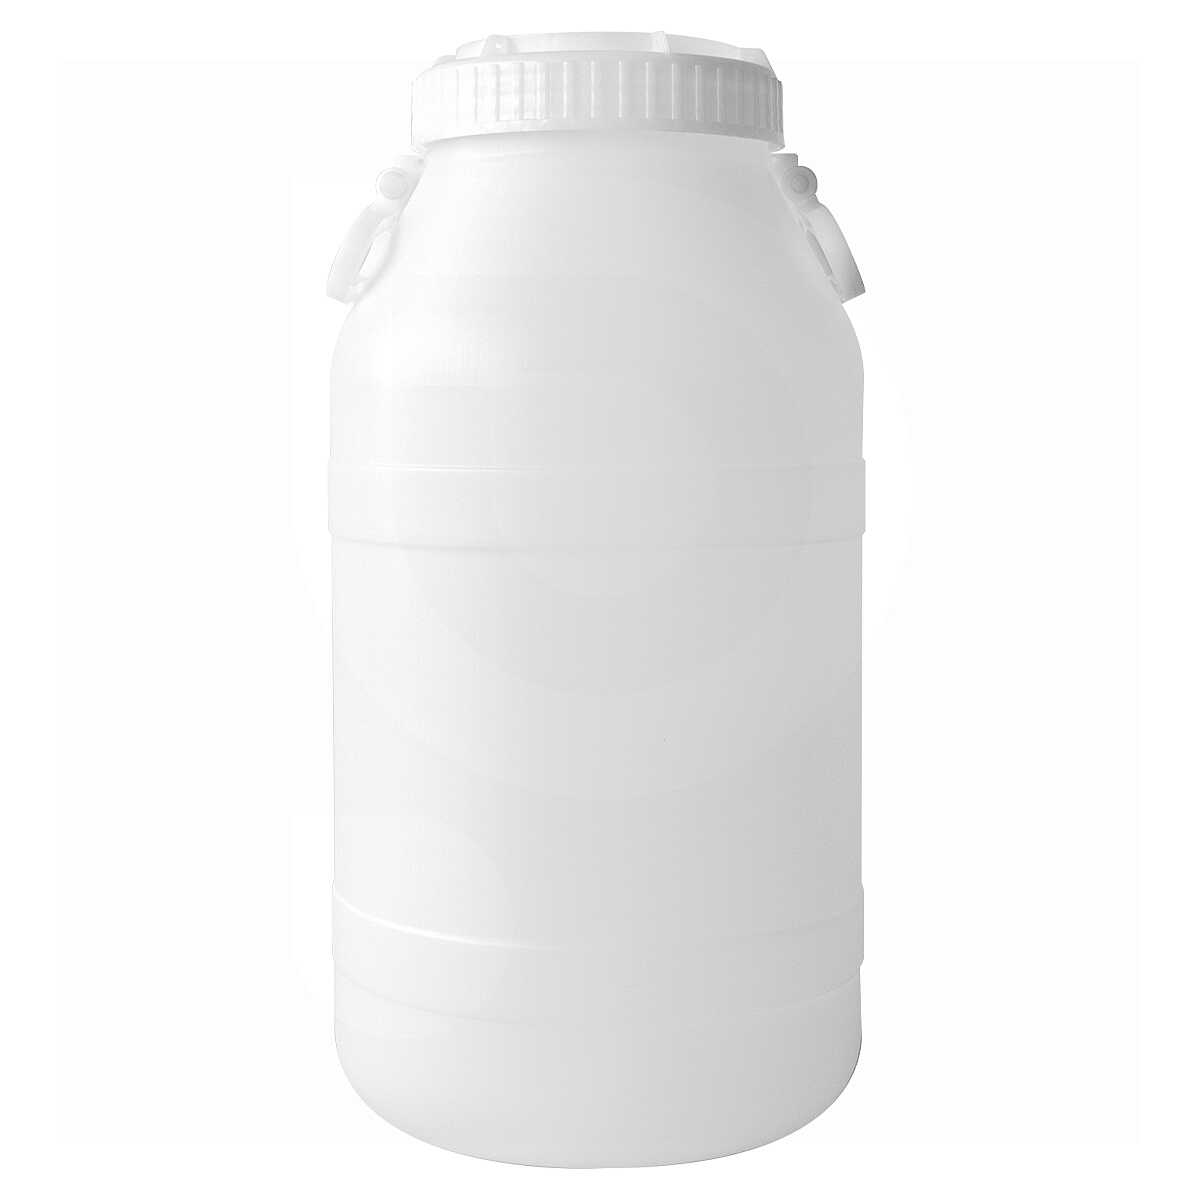 Öl-Kannensystem aus Polyethylen, weiß, verschiedene Größen von 2l, 5l und  10Litern